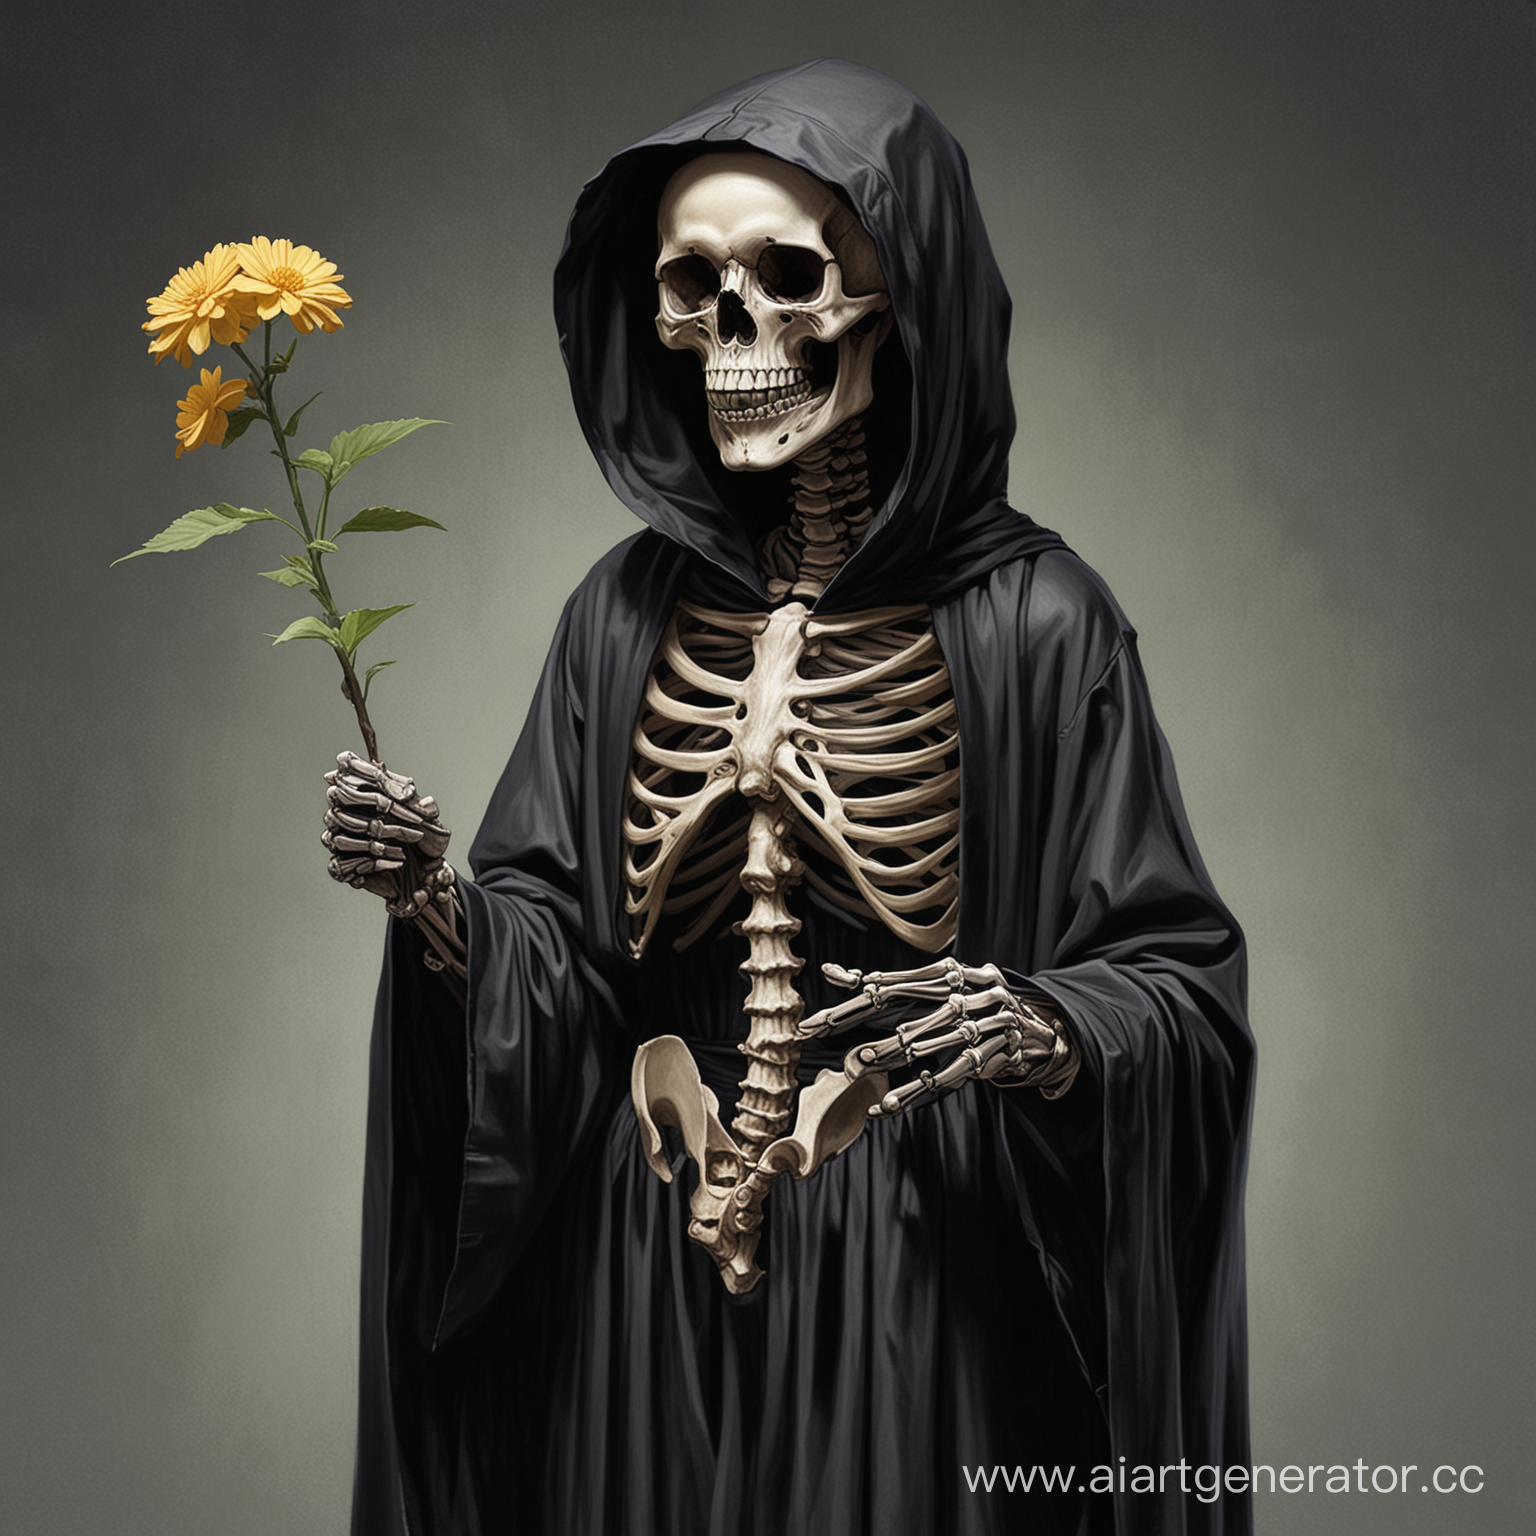 Нарисуй, до пояса, полубоком, скелета в чёрном балахоне с капюшоном на голове, держащий двумя руками цветок ликорис.